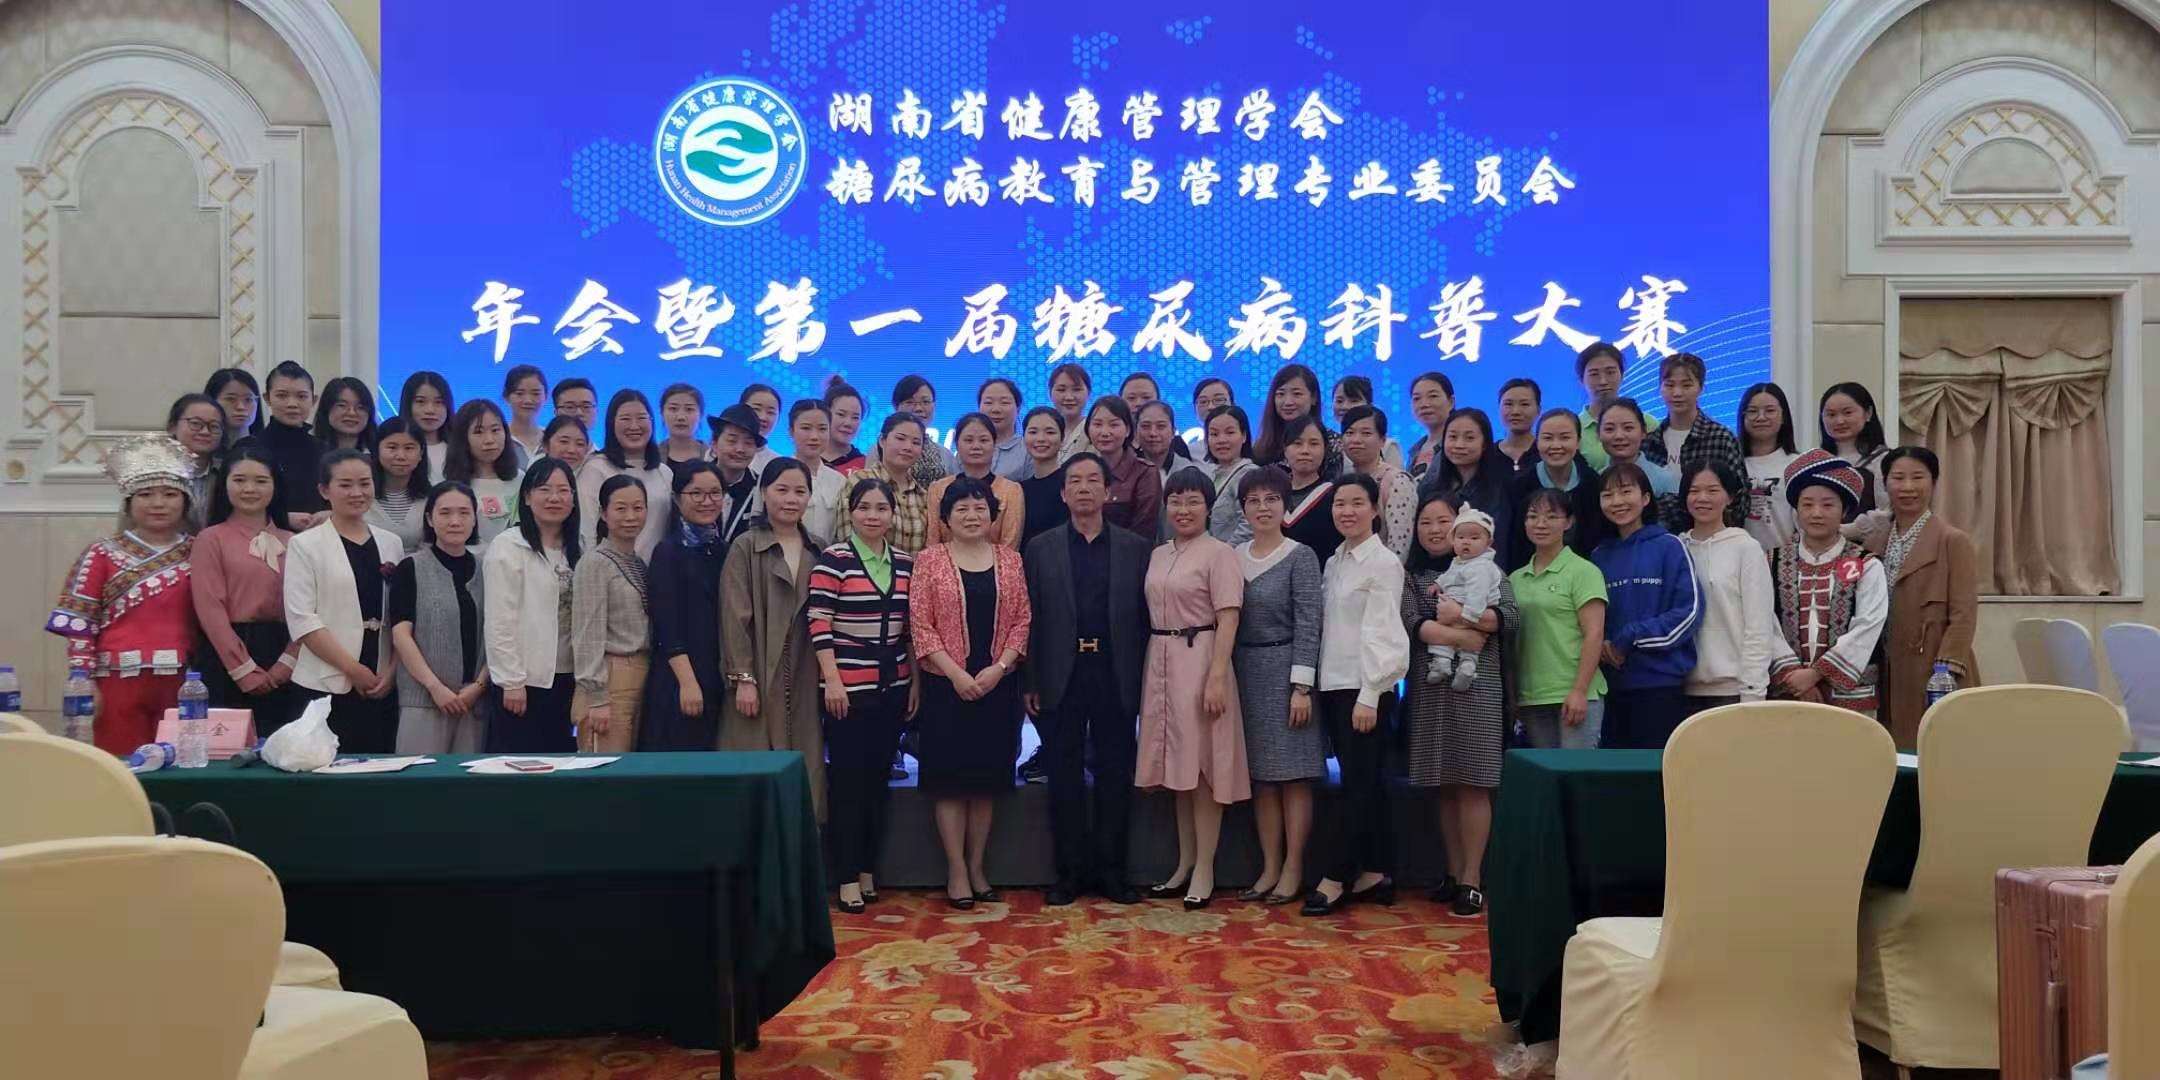 湖南省健康管理学会糖尿病教育与管理专业委员会2019年年会暨第一届糖尿病科普大赛圆满结束